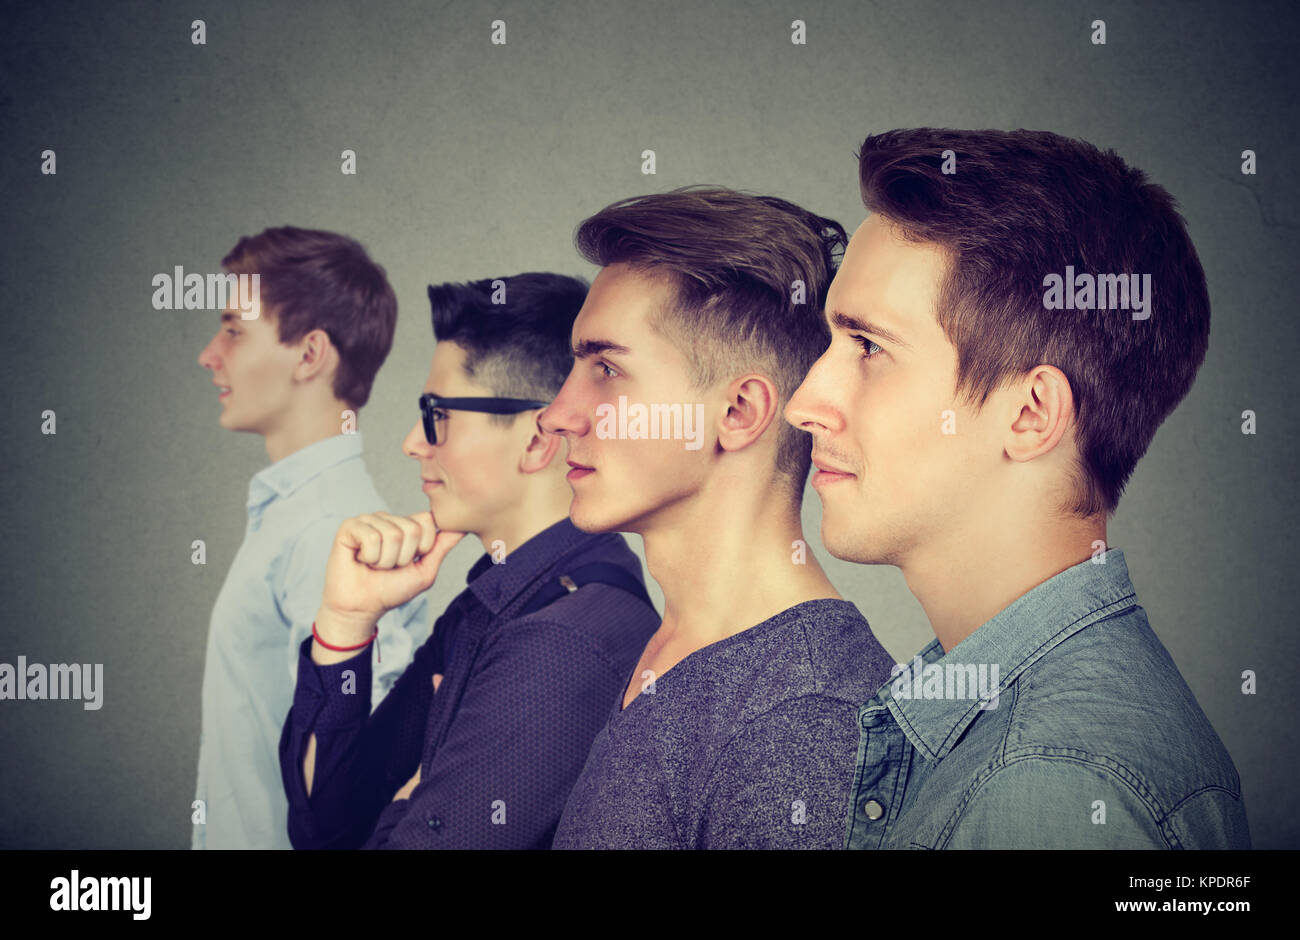 Seitliche Sicht auf vier junge Männer, die in der Zeile stehen und freuen uns auf grauem Hintergrund. Stockfoto